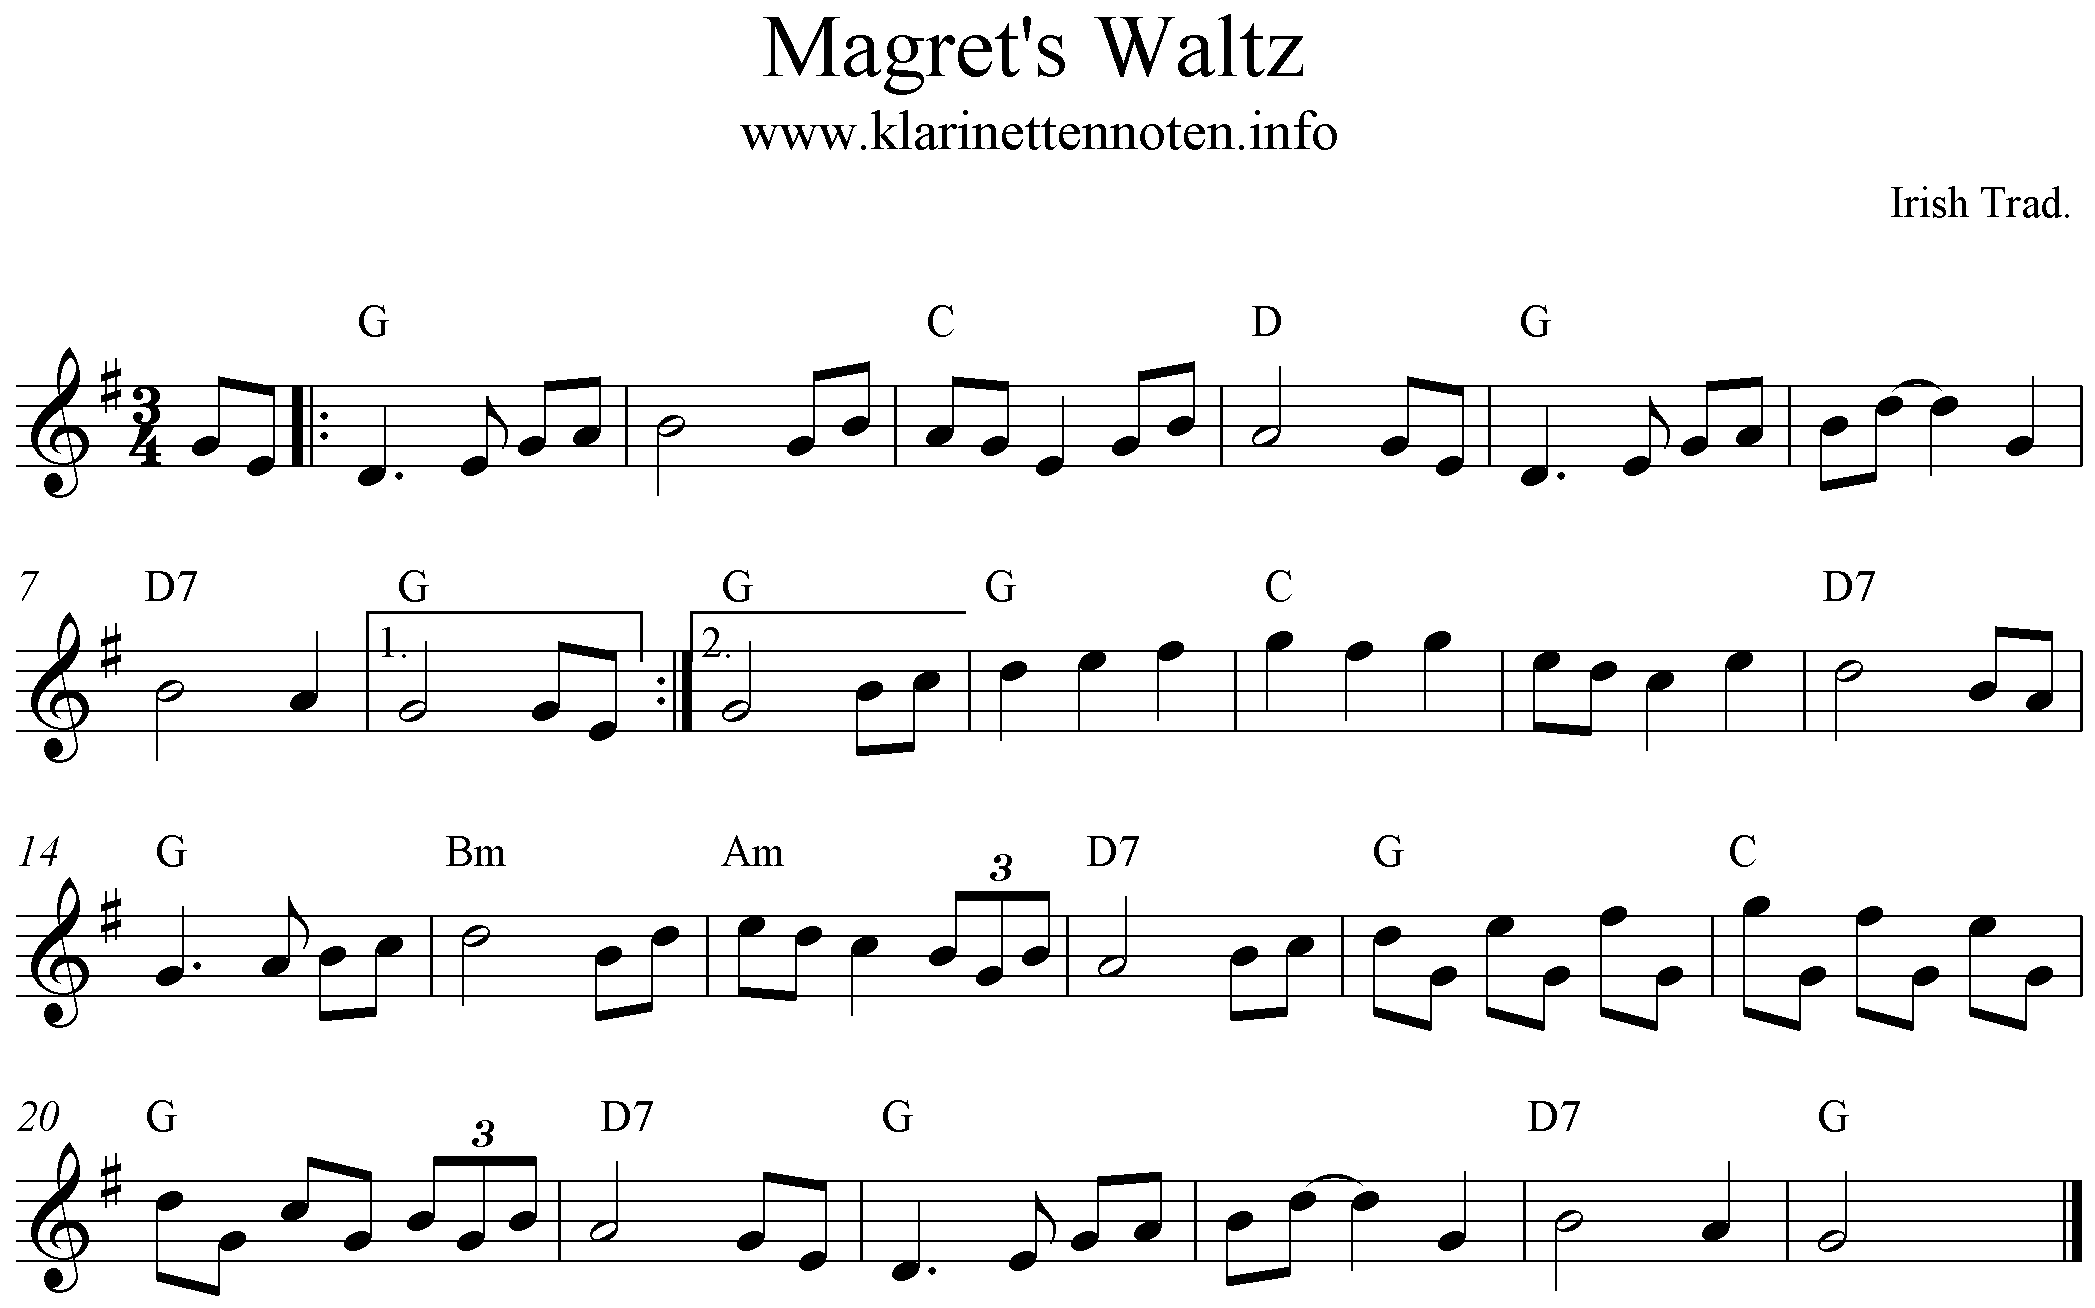 Magret's Waltz, G-Major